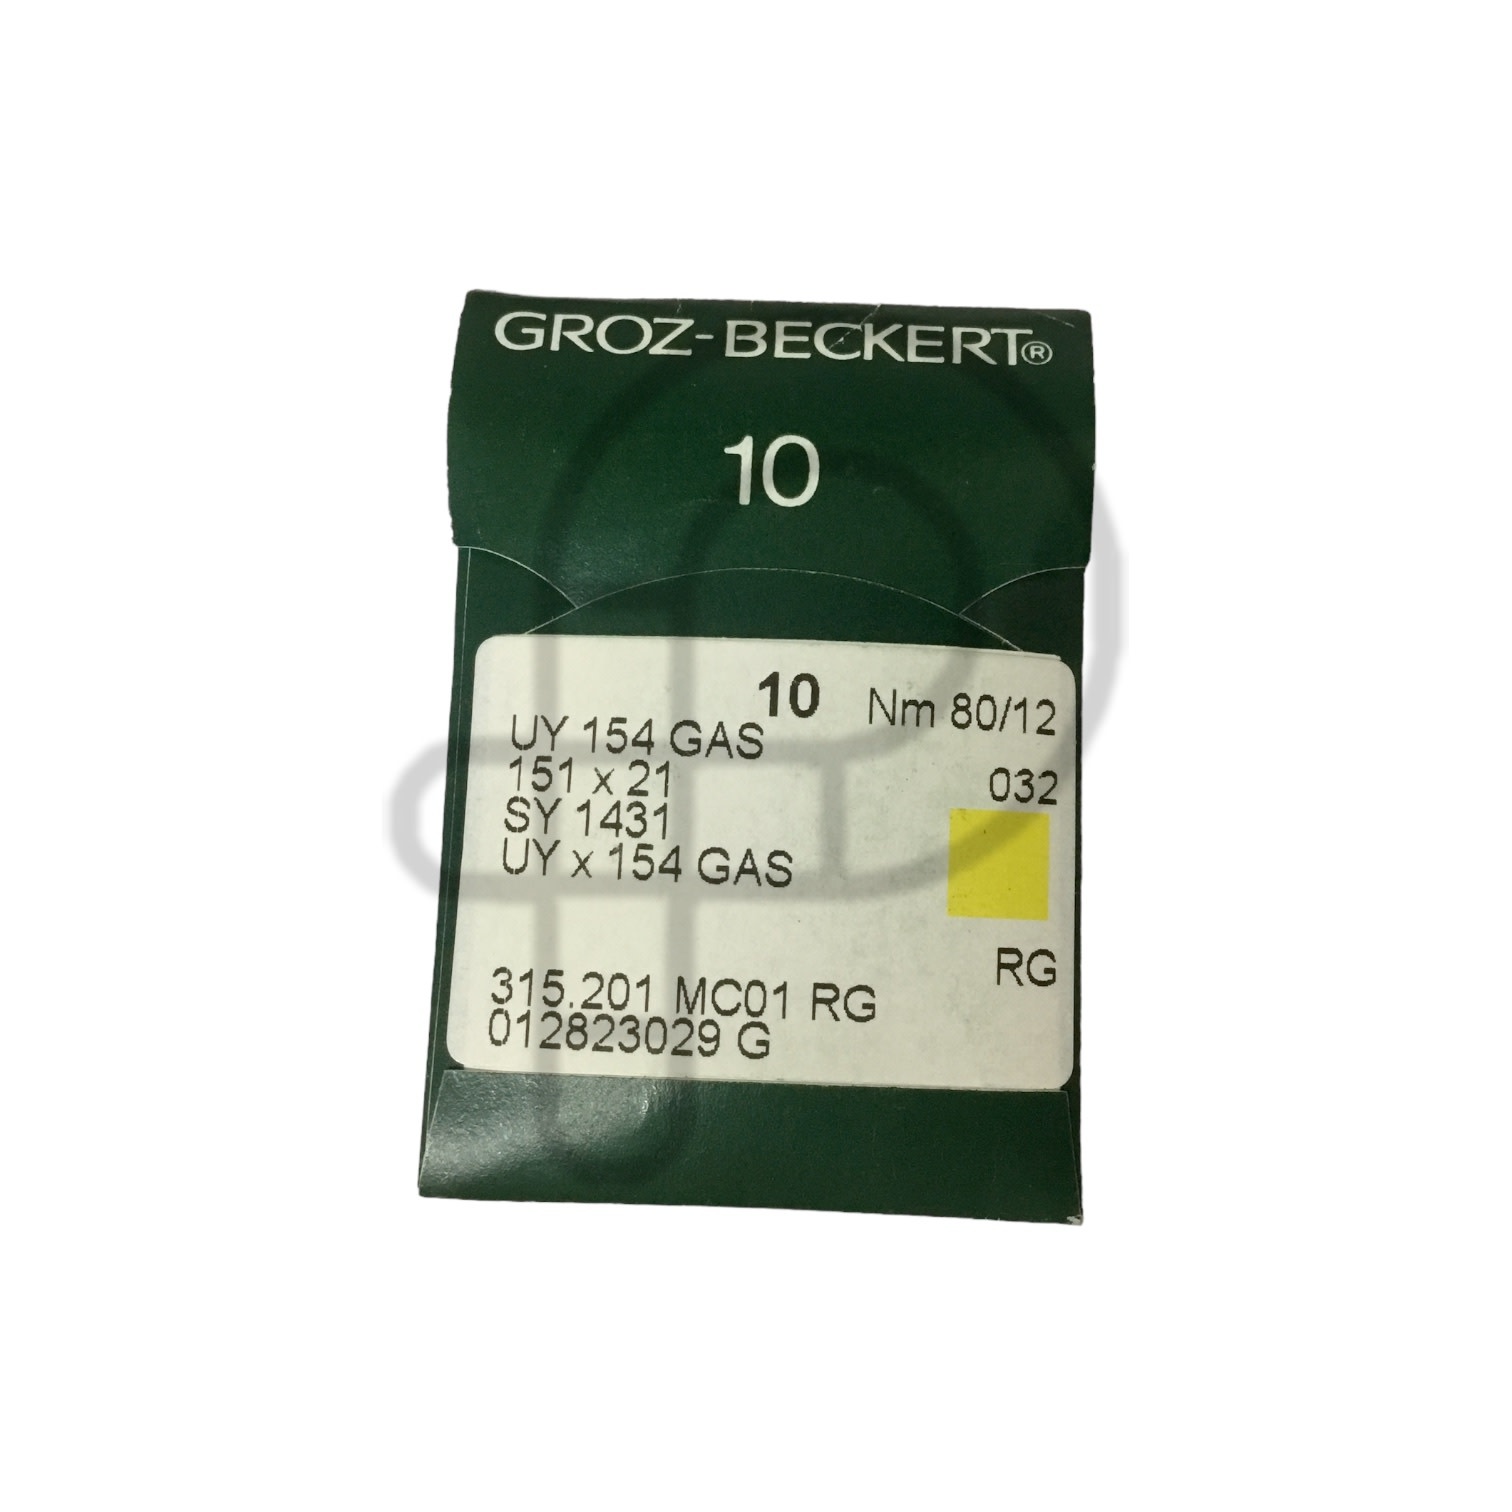 Groz - Beckert DISC Aiguille surjeteuse courbe union special UY154 GAS grandeur 80/12 paquet de 10